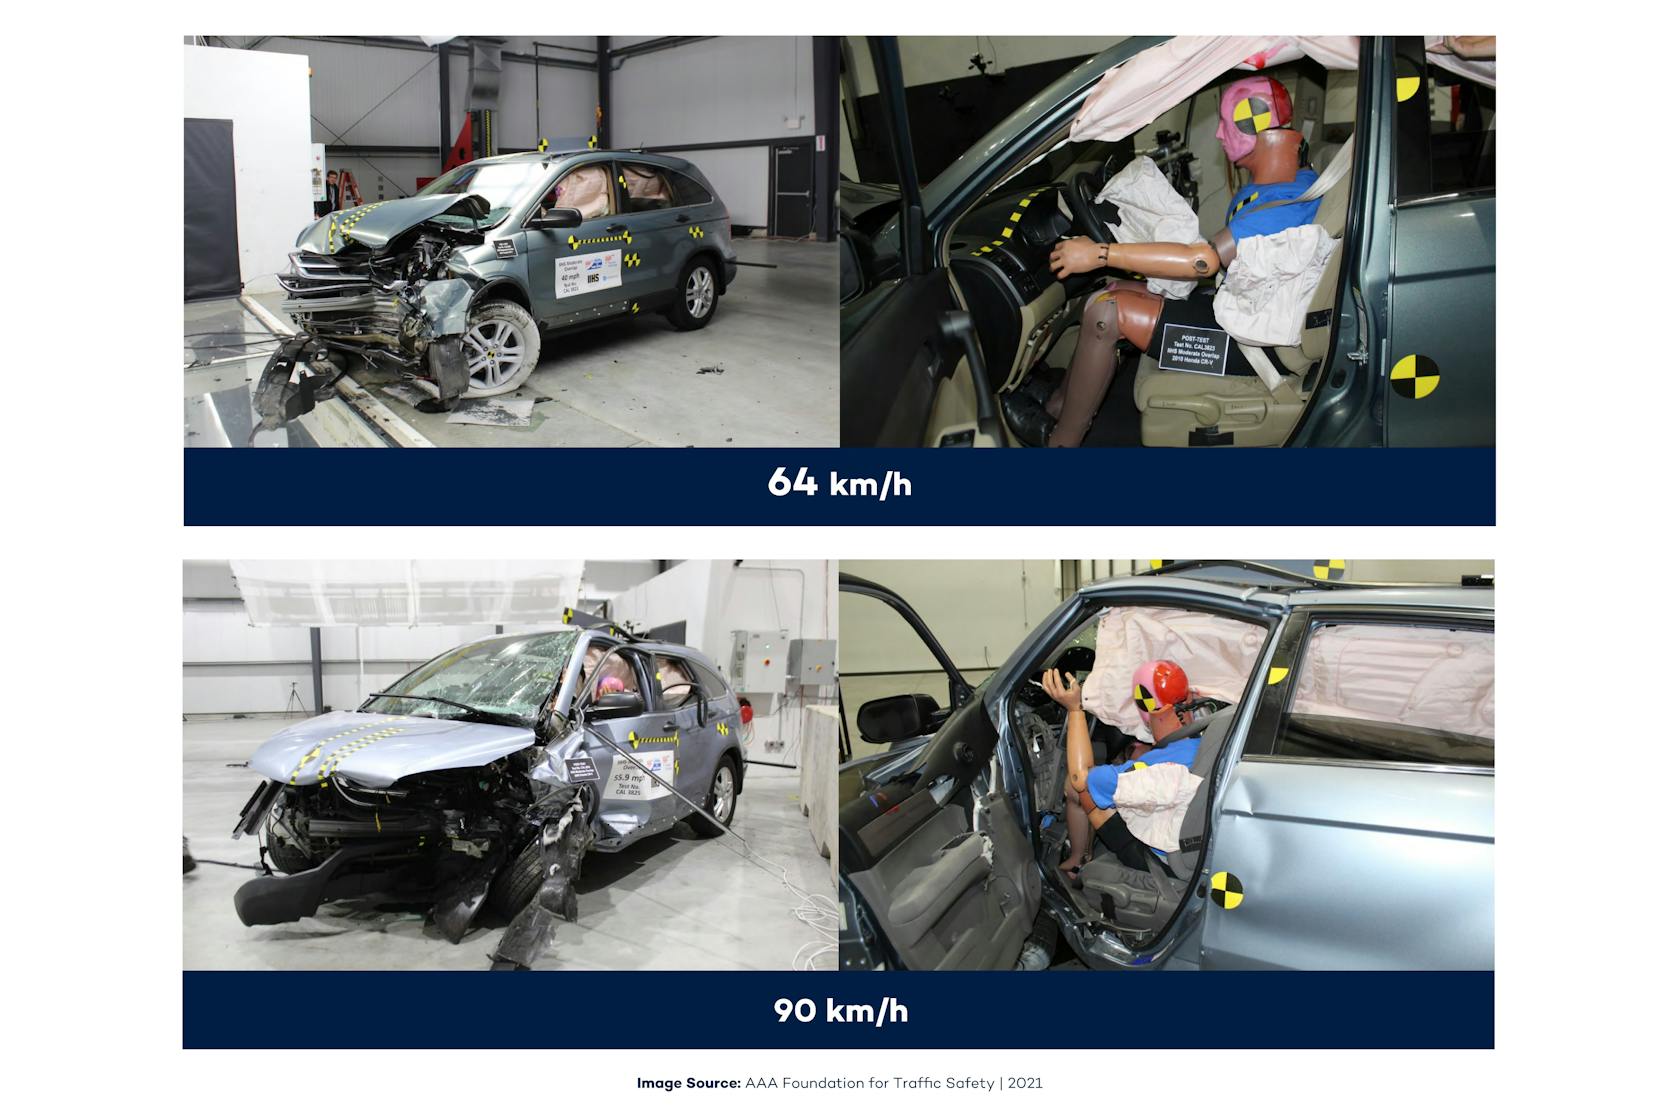 Cuatro imágenes de pruebas de choque. Dos imágenes muestran los efectos de un choque a 64 km/h; las otras dos muestran los efectos a una velocidad de 90 km/h.